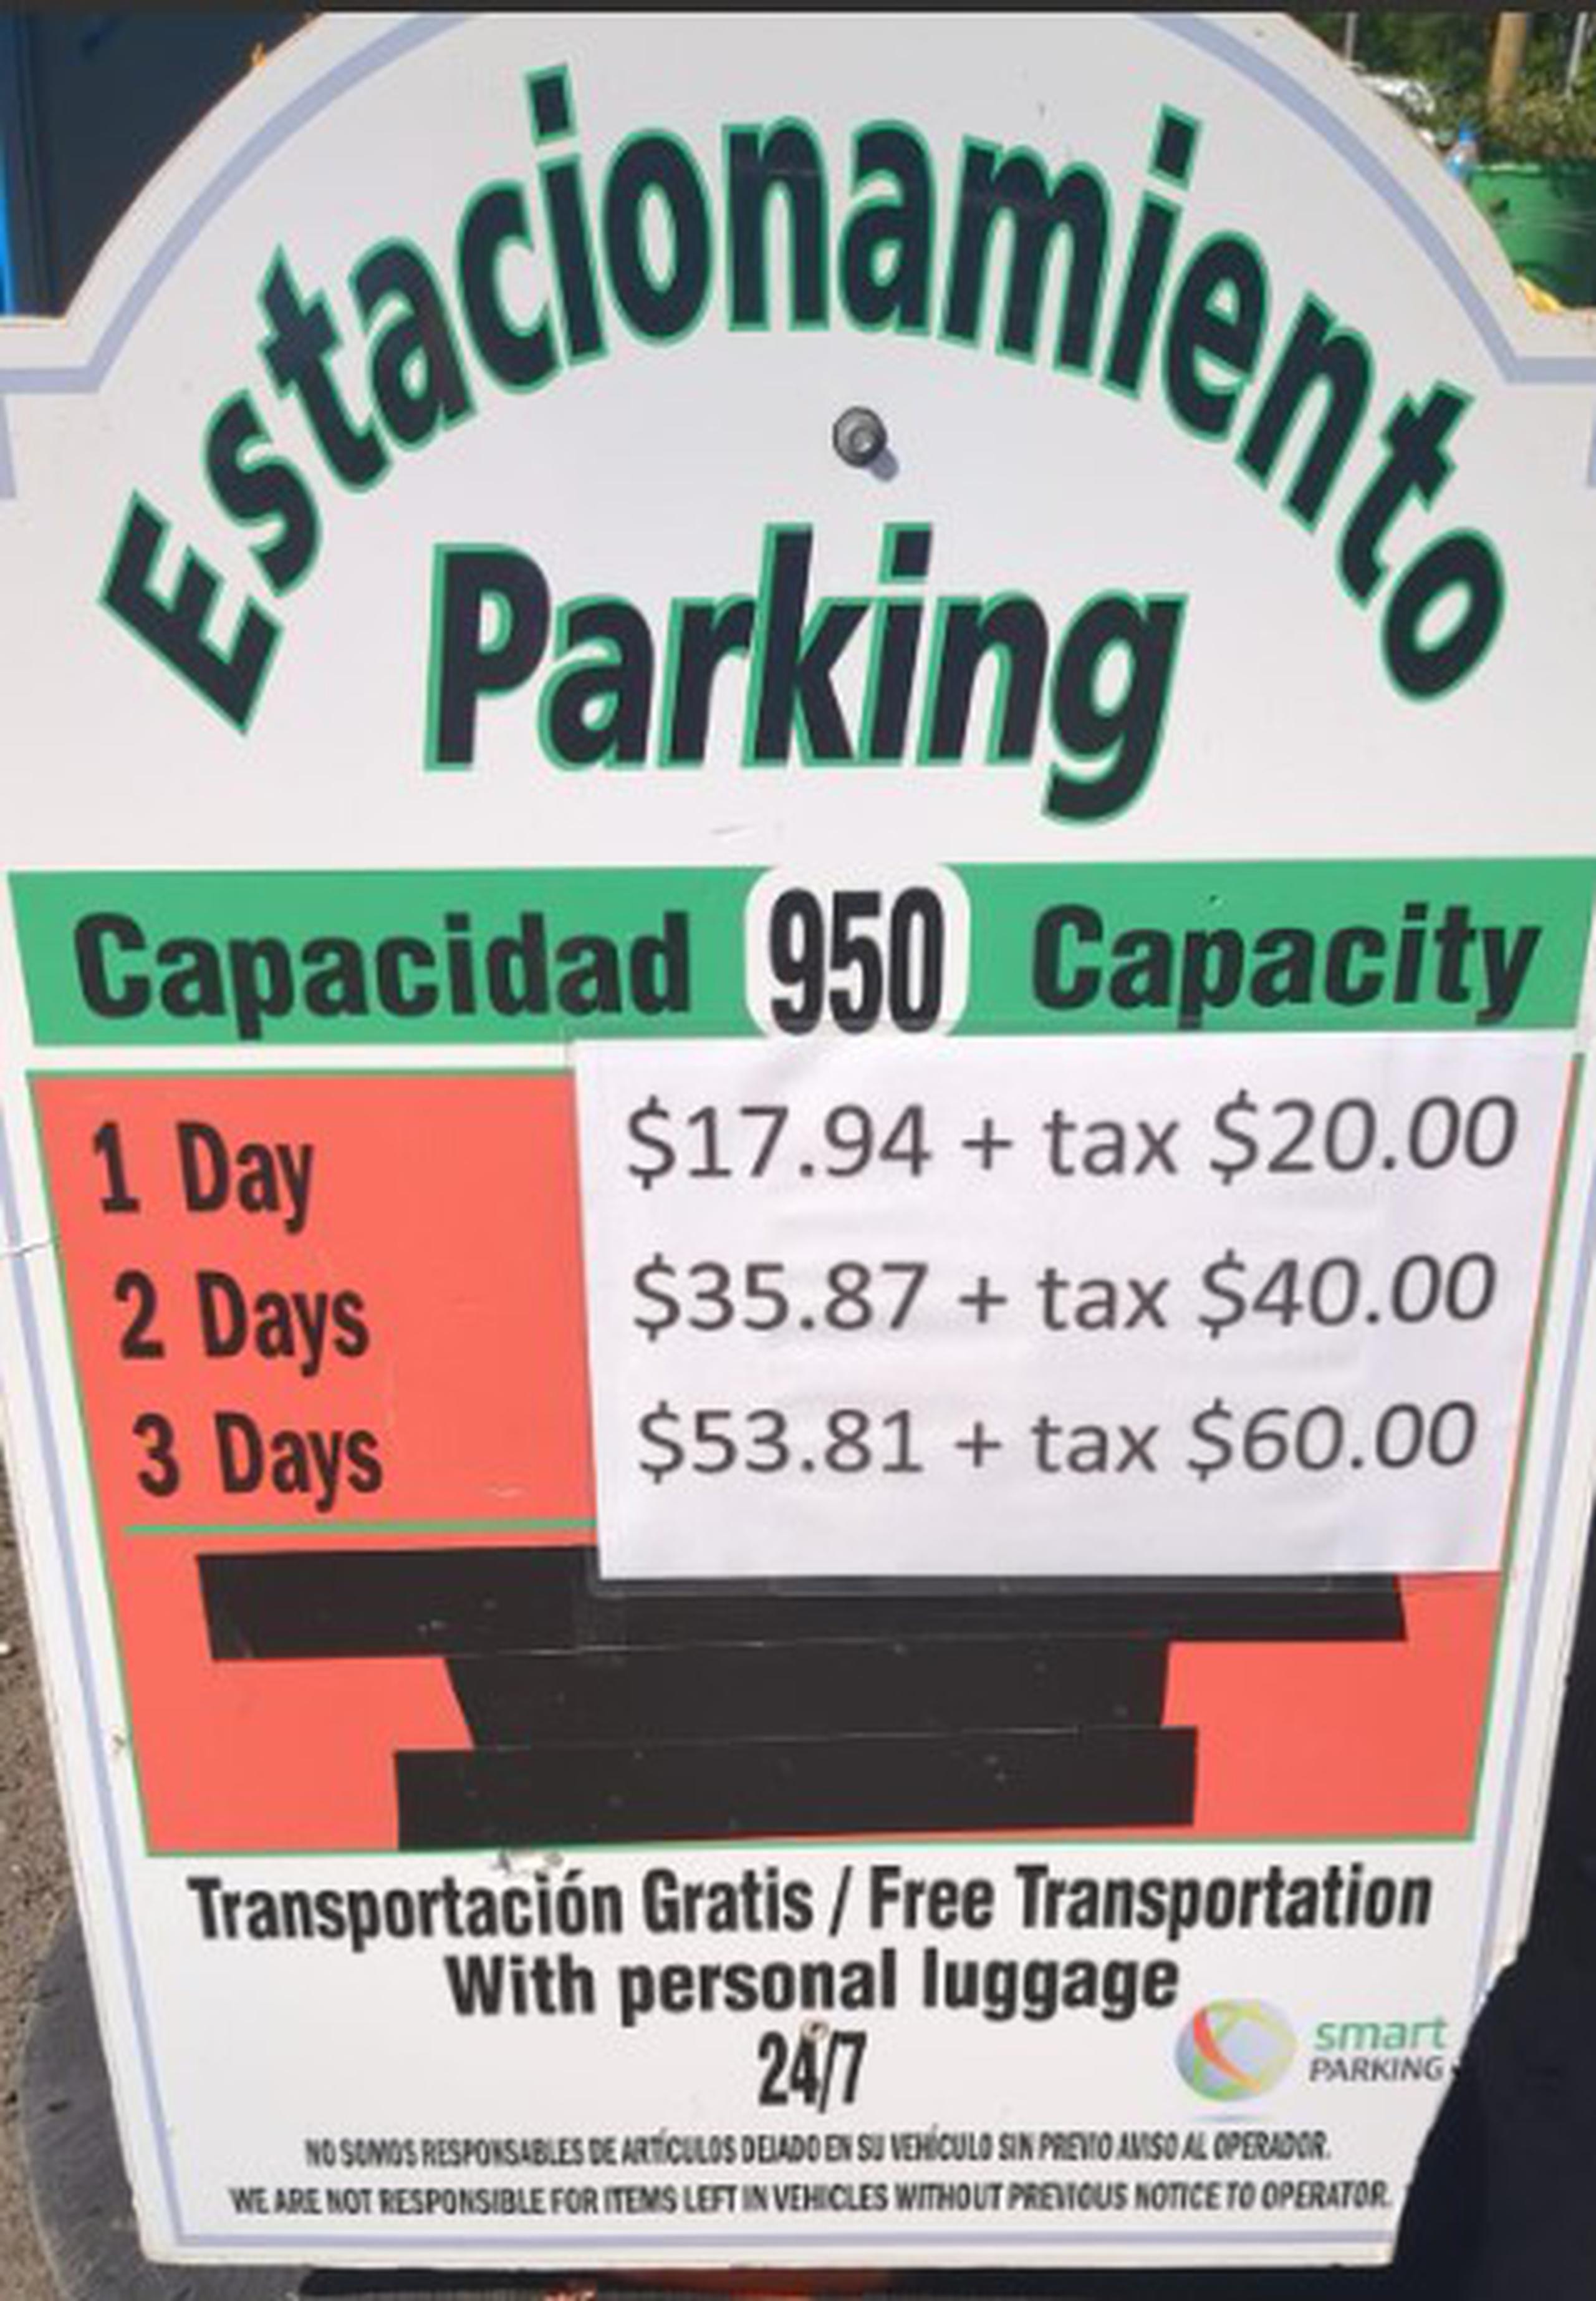 Imagen provista por el alcalde de Vieques, José Corcino, en la que se observa el costo del estacionamiento.